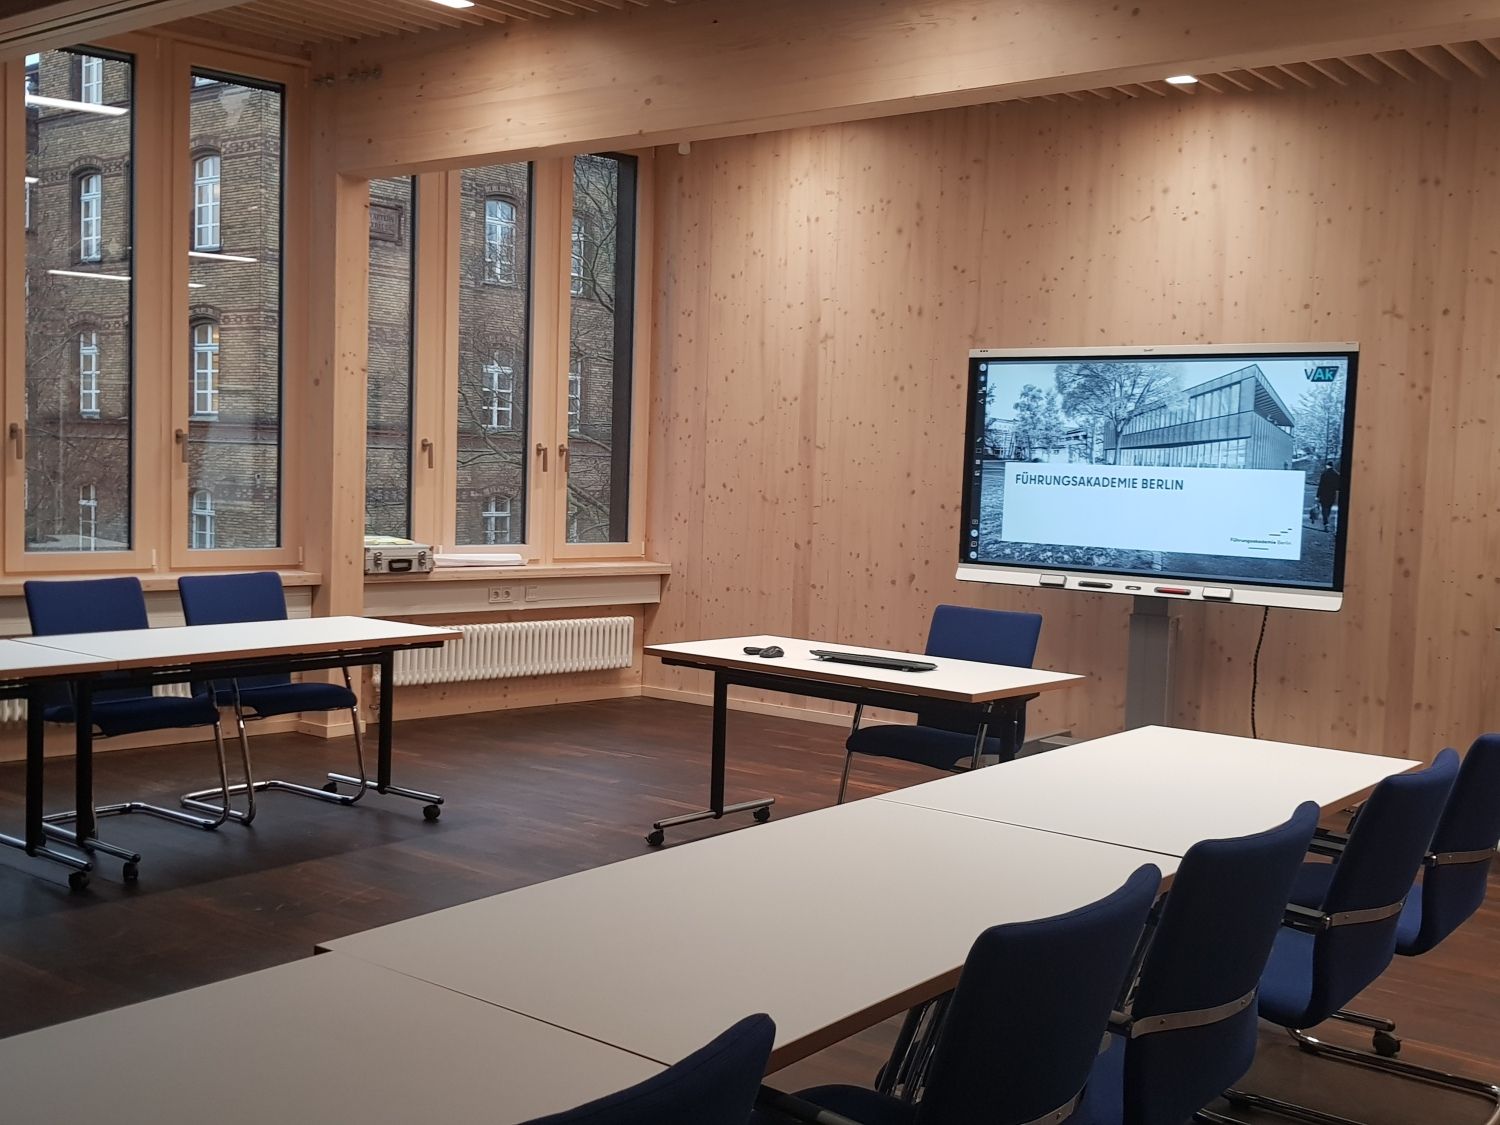 Blick in ein Seminarraum des Haus 3 der VAk mit einem Smartboard auf dem Führungsakademie Berlin steht